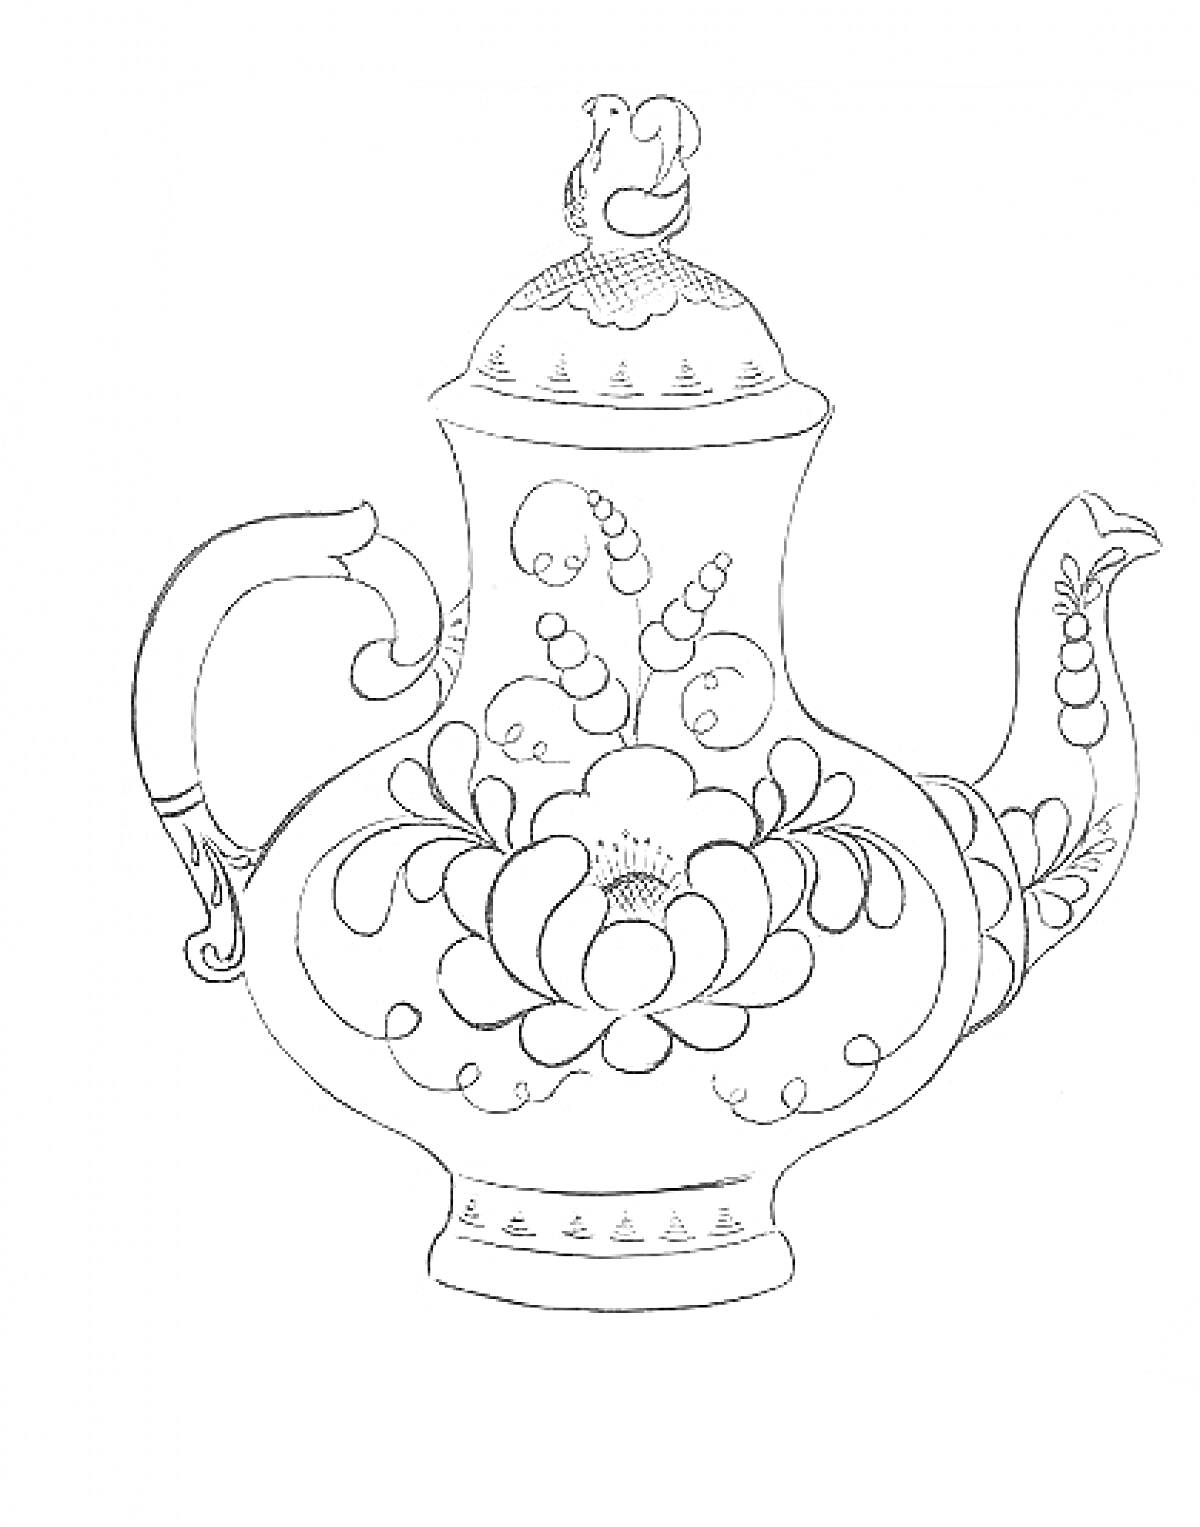 Заставка с гжельским чайником с птицей на крышке, украшенным цветочным орнаментом